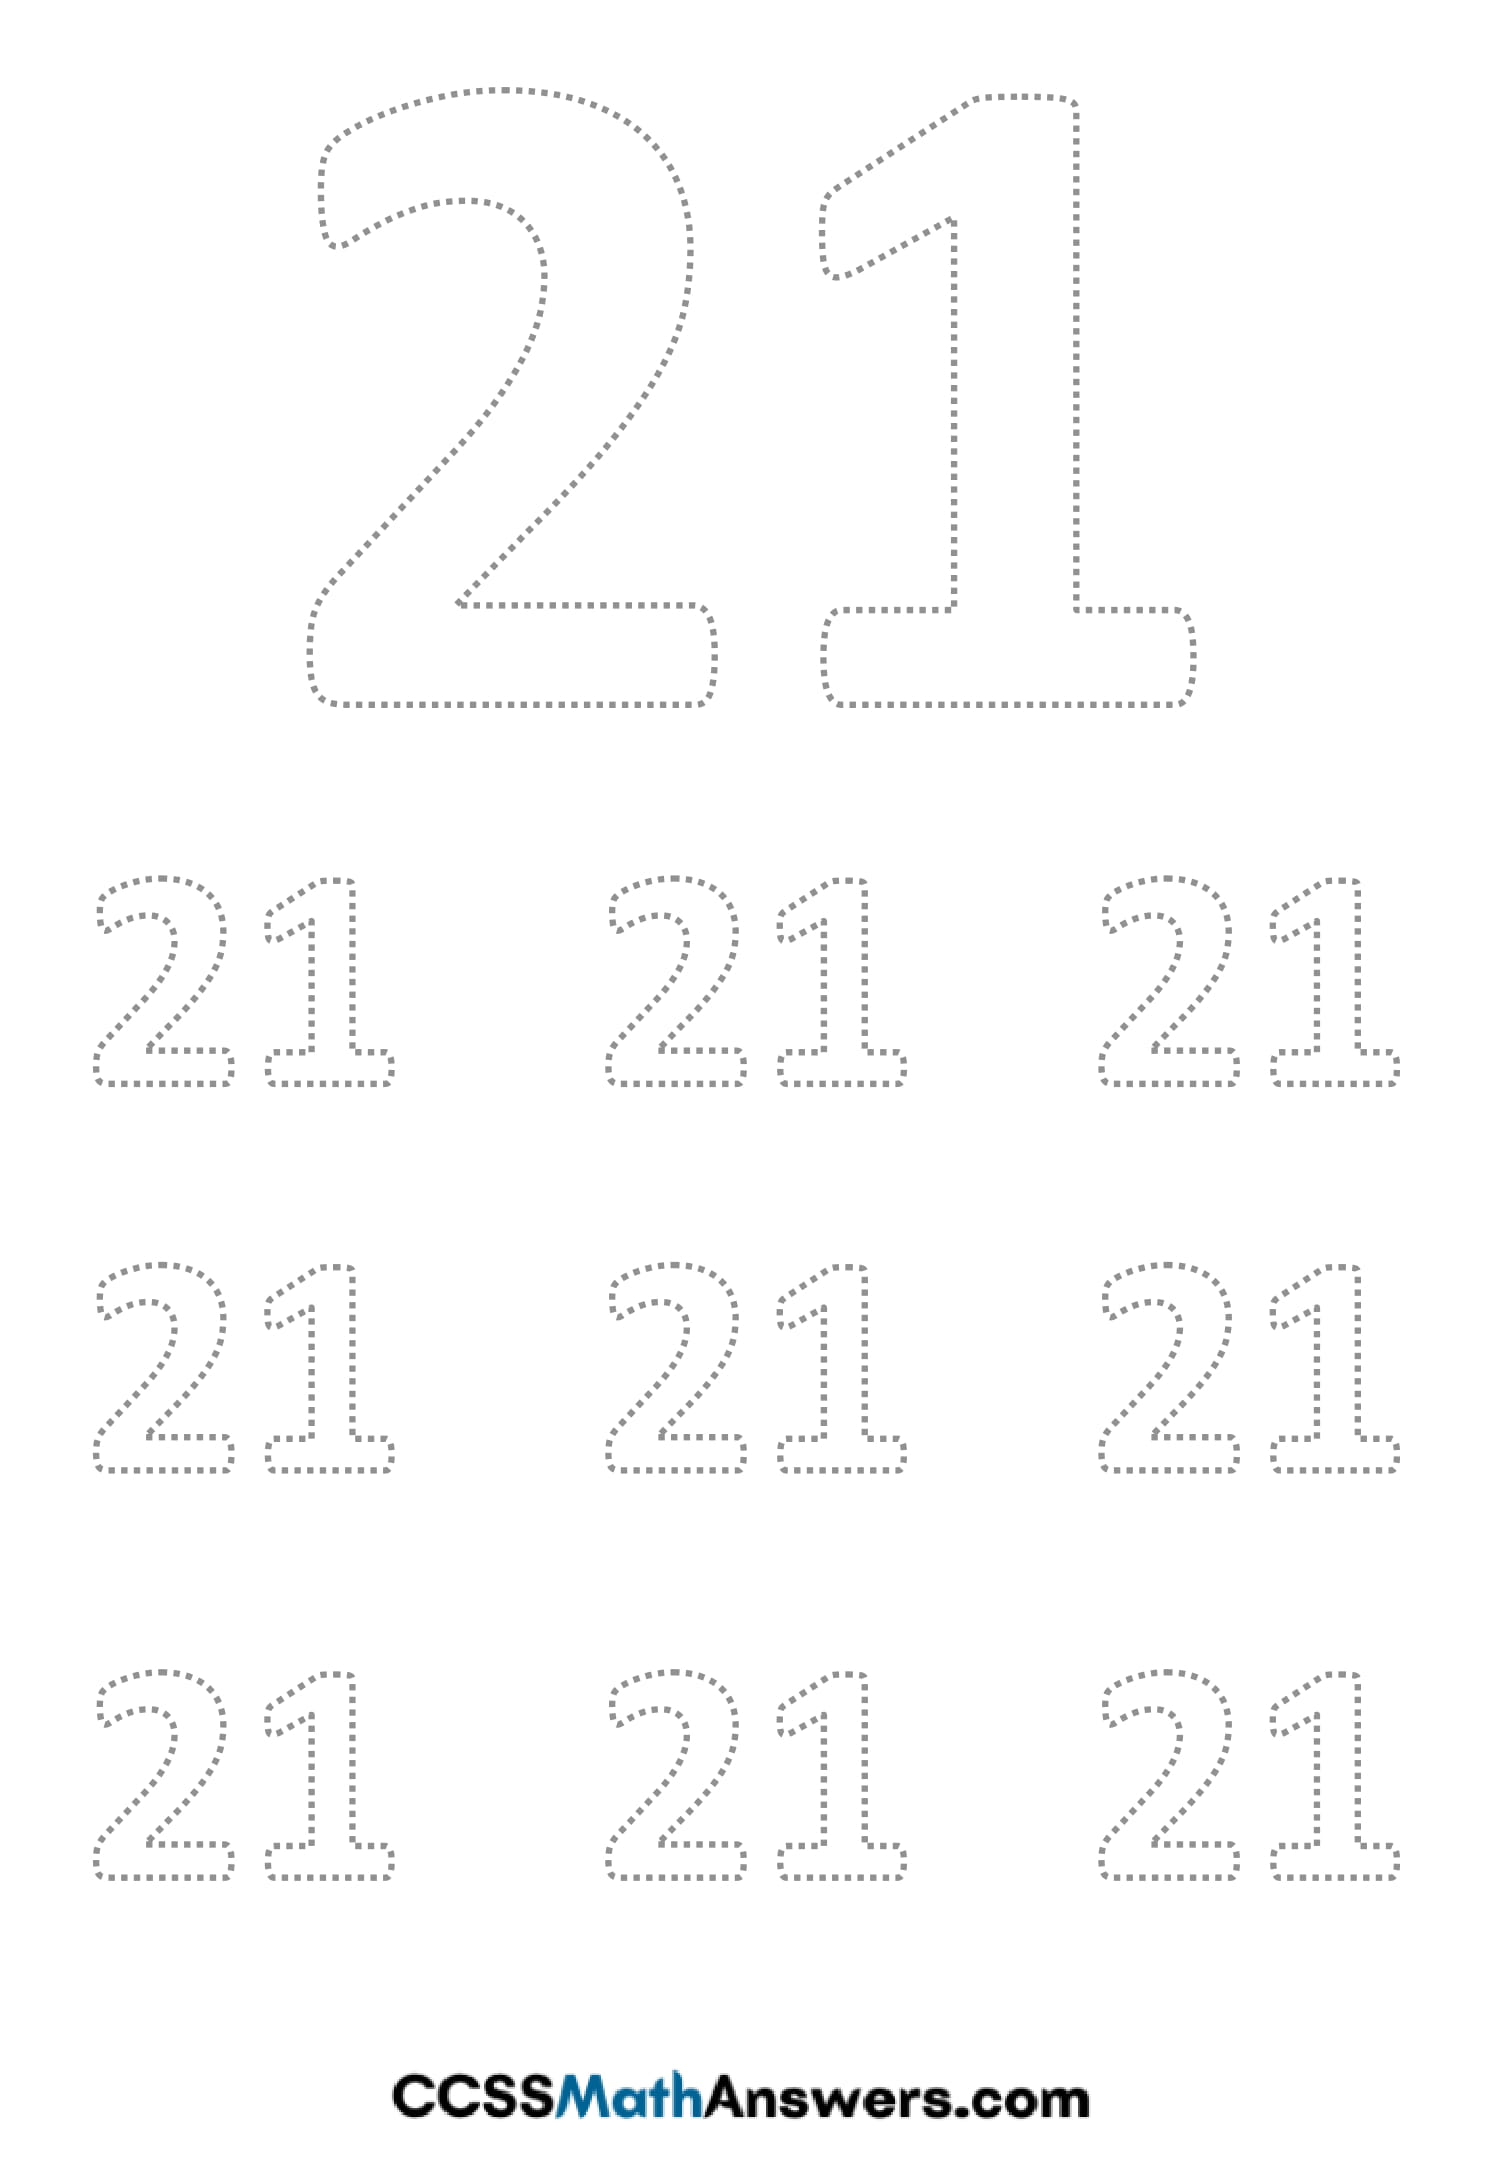 Worksheet On Number 21 Number 21 Tracing Worksheets Free Printable 